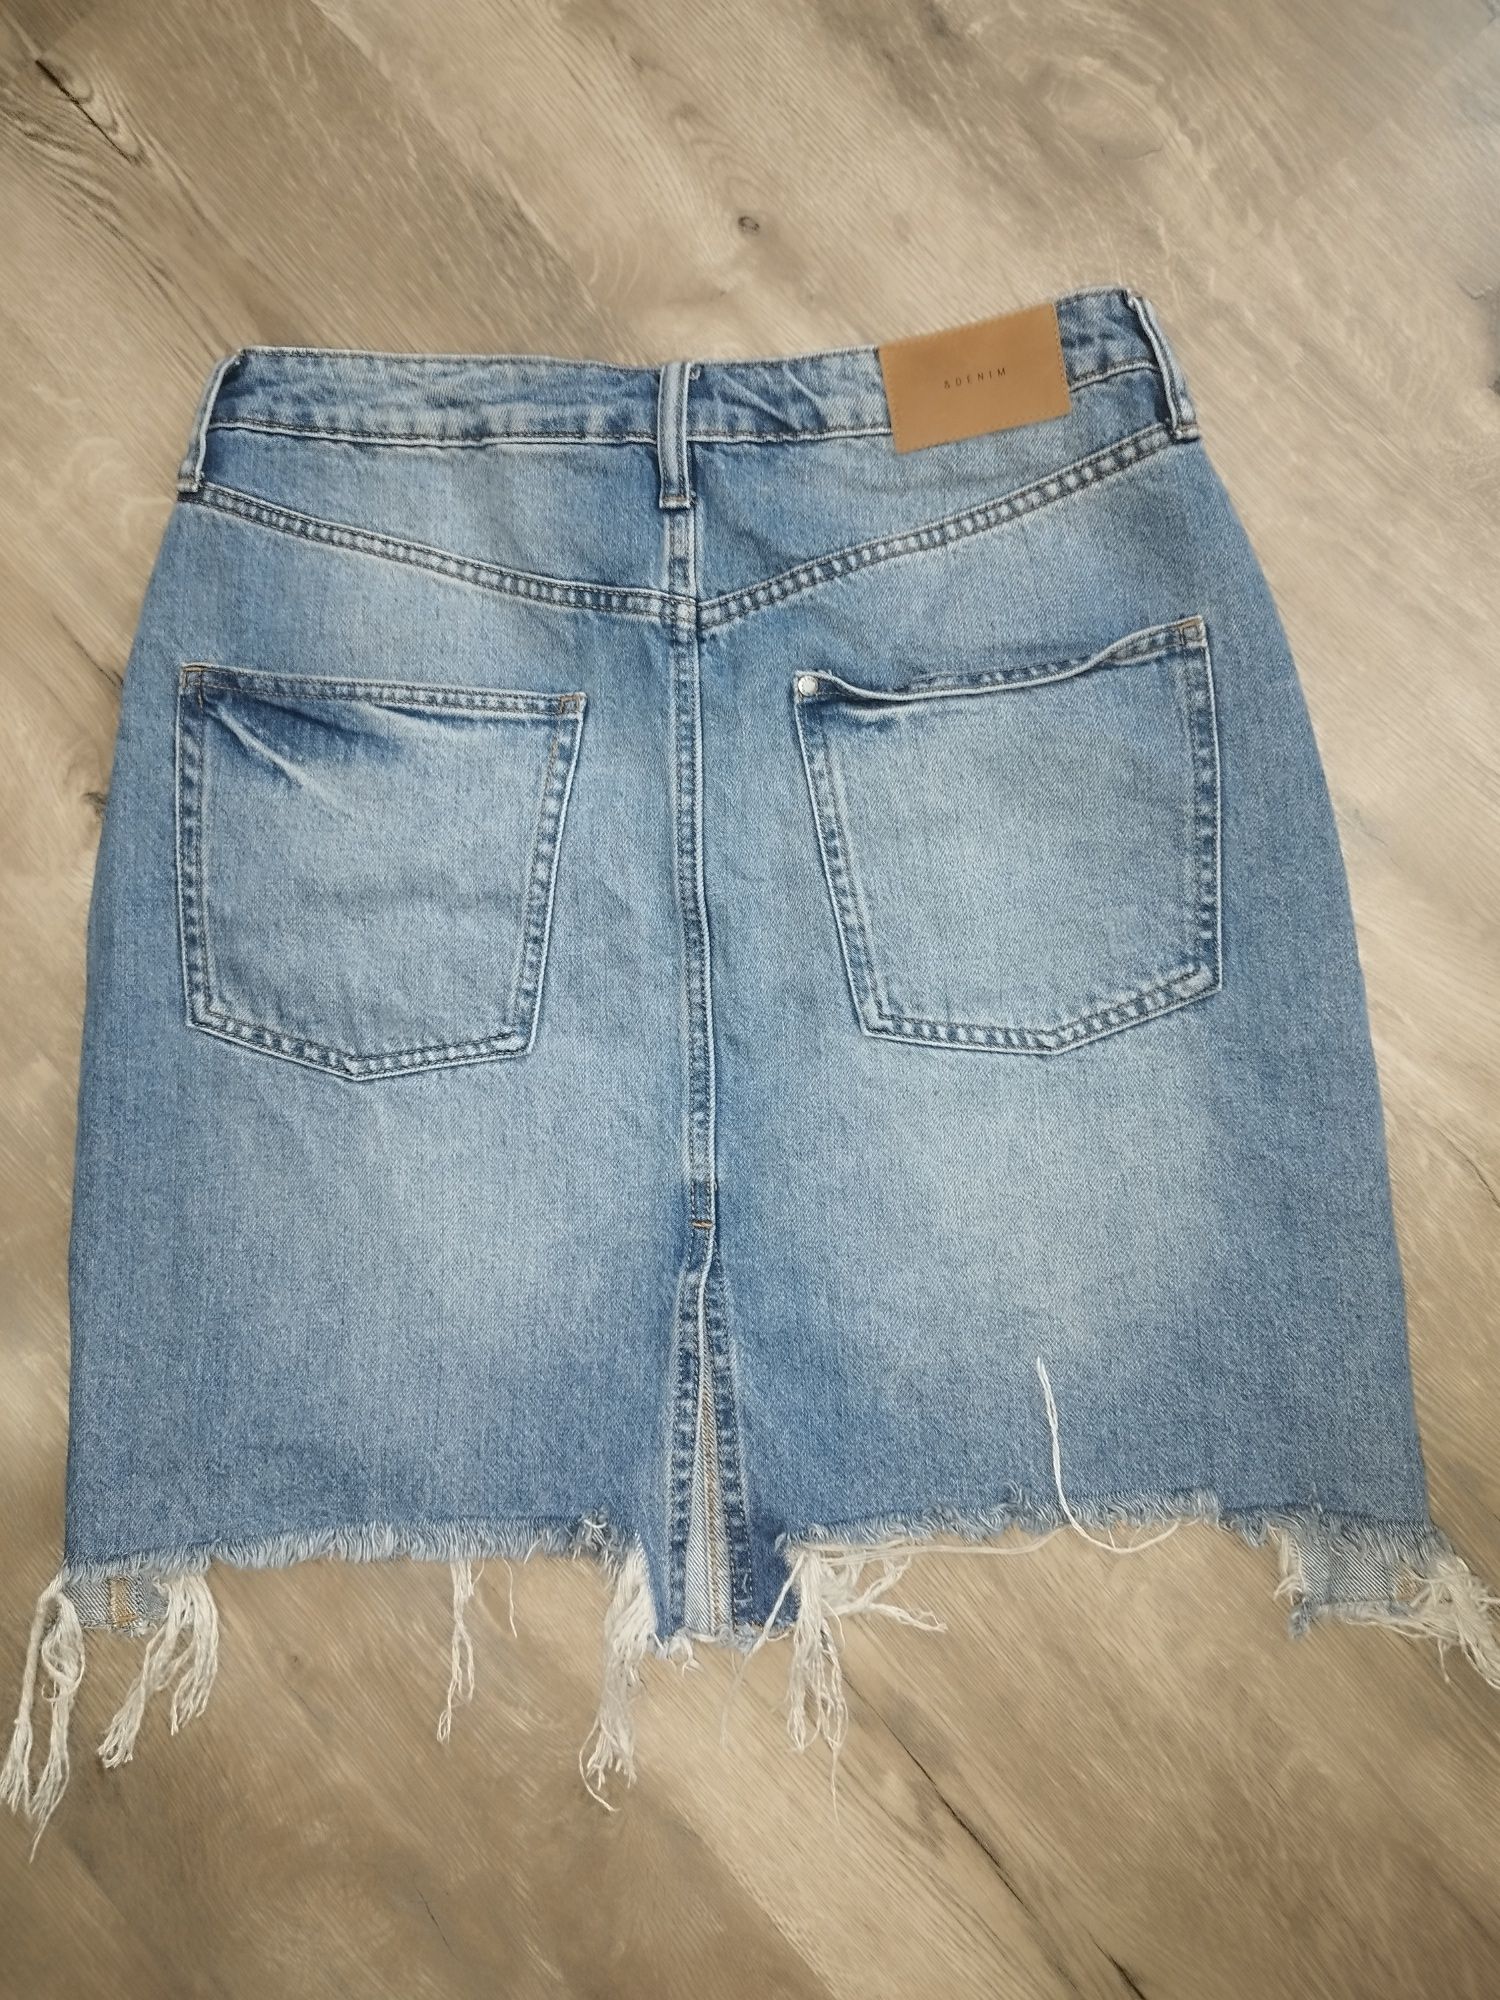 Modna Spódnica jeansowa firmy H&M rozmiar 38/M Nowa!